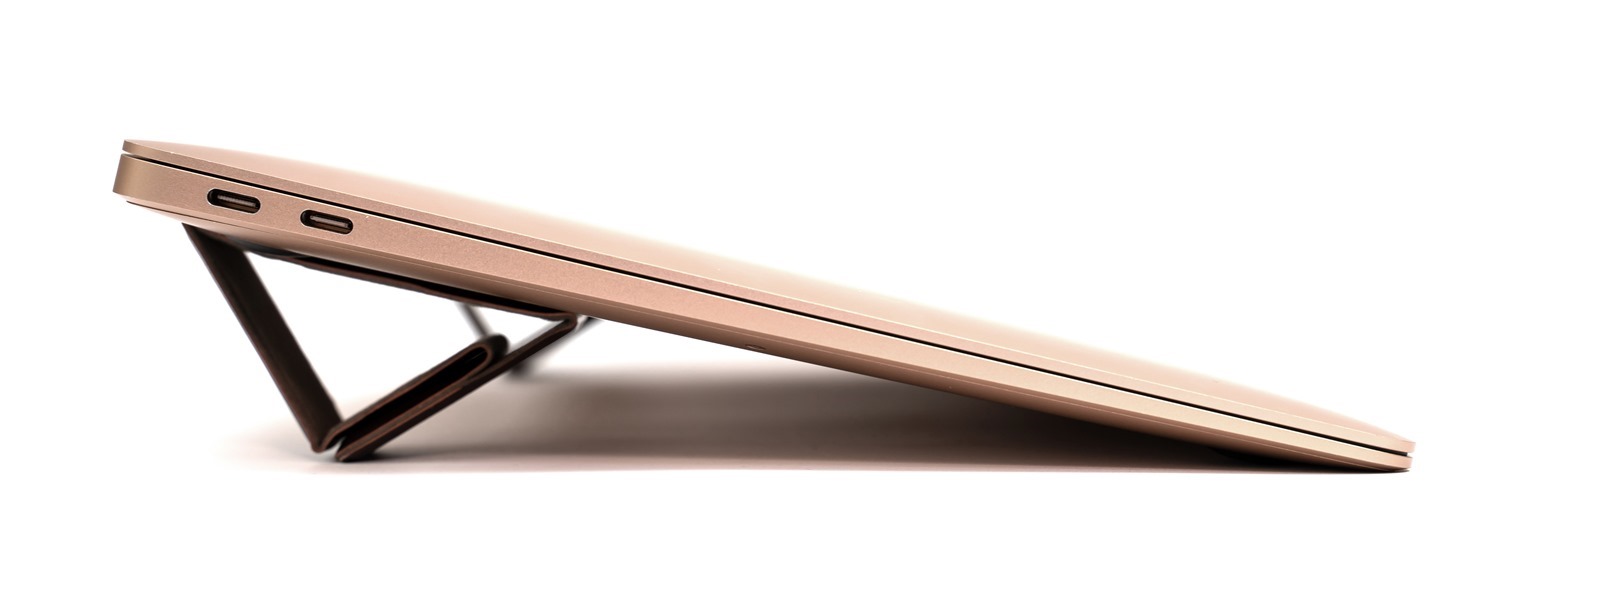 皮革質感、0.4cm 的超薄輕巧，優雅自由，地表最小最美 Bestmade NEO 皮革筆電架來了！ @3C 達人廖阿輝